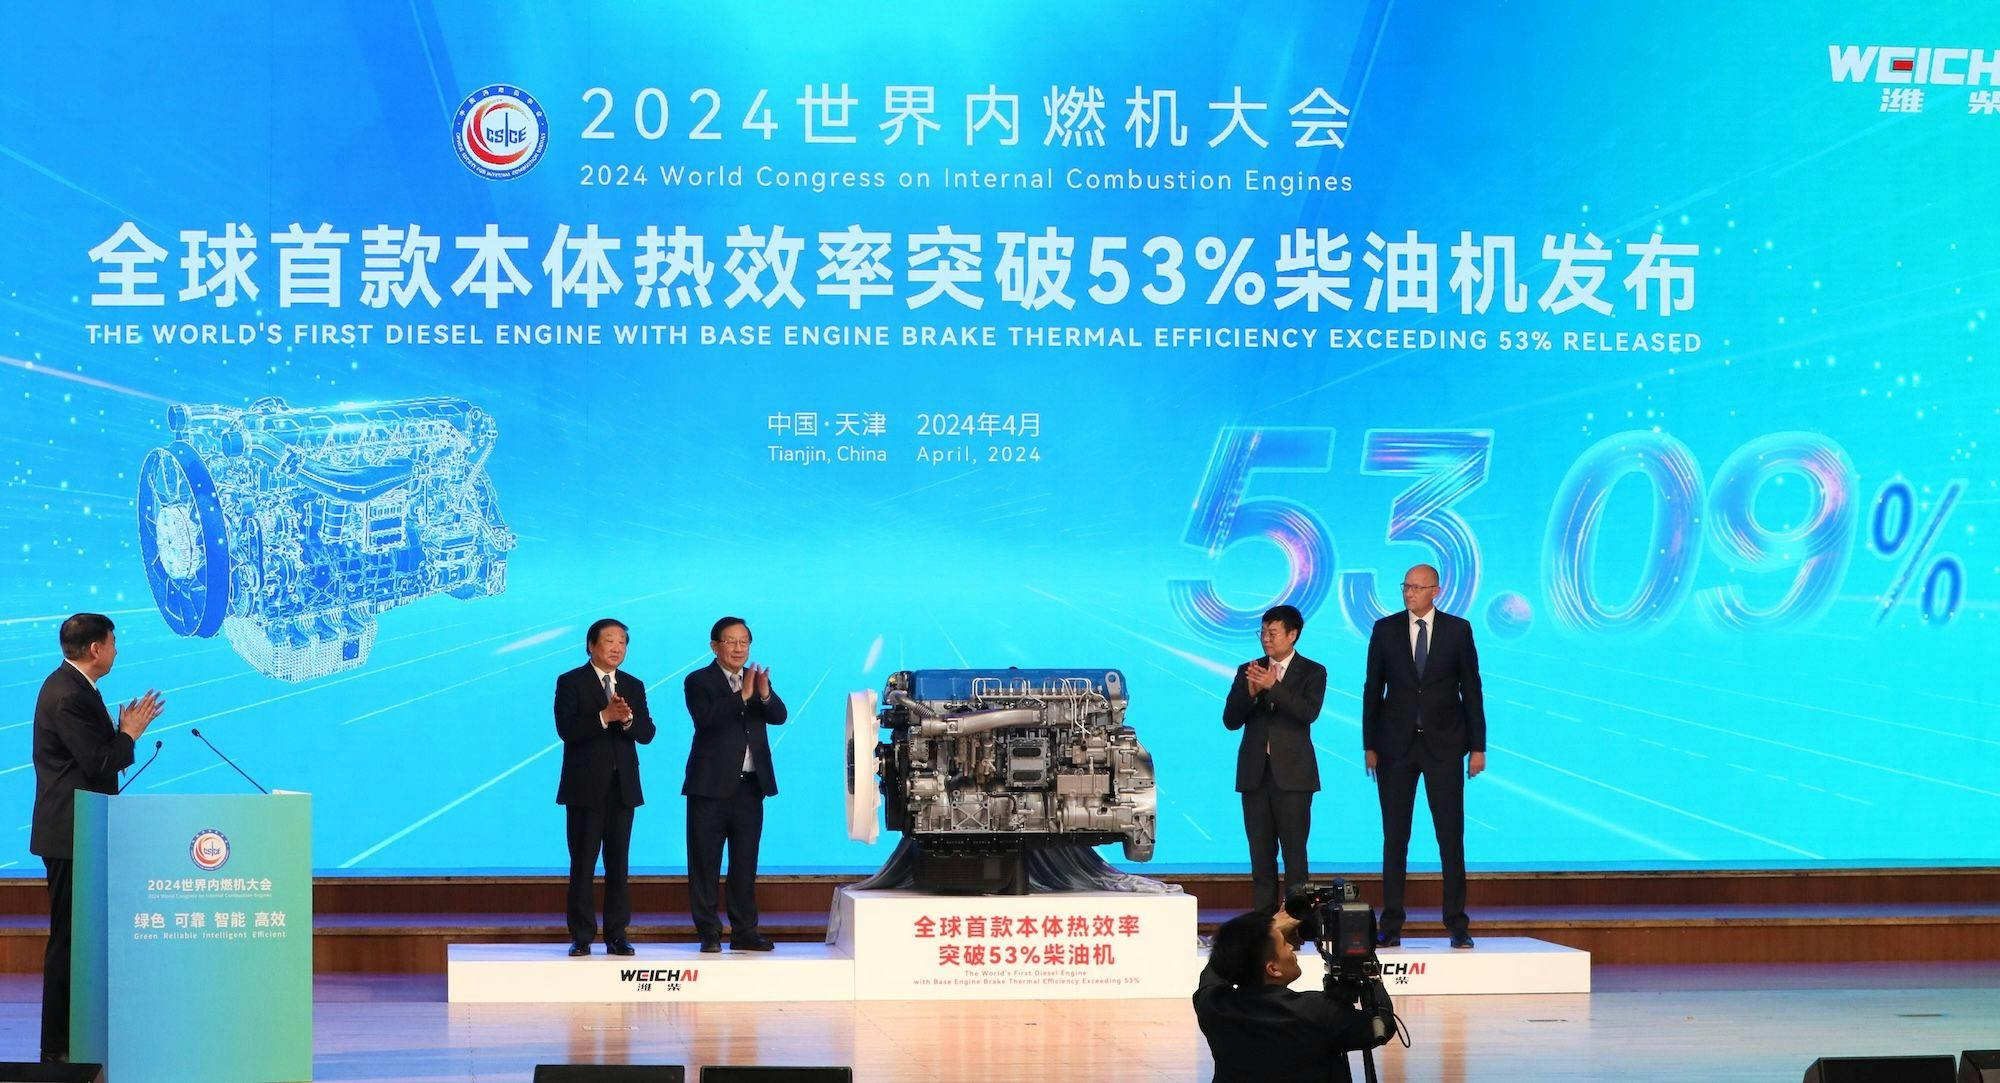  Der weltweit erste kommerzielle Dieselmotor mit einem thermischen Wirkungsgrad von über 53 Prozent für den Basismotor wird bei der Eröffnungsfeier des Weltkongresses für Verbrennungsmotoren 2024 in der nordchinesischen Stadt Tianjin vorgestellt